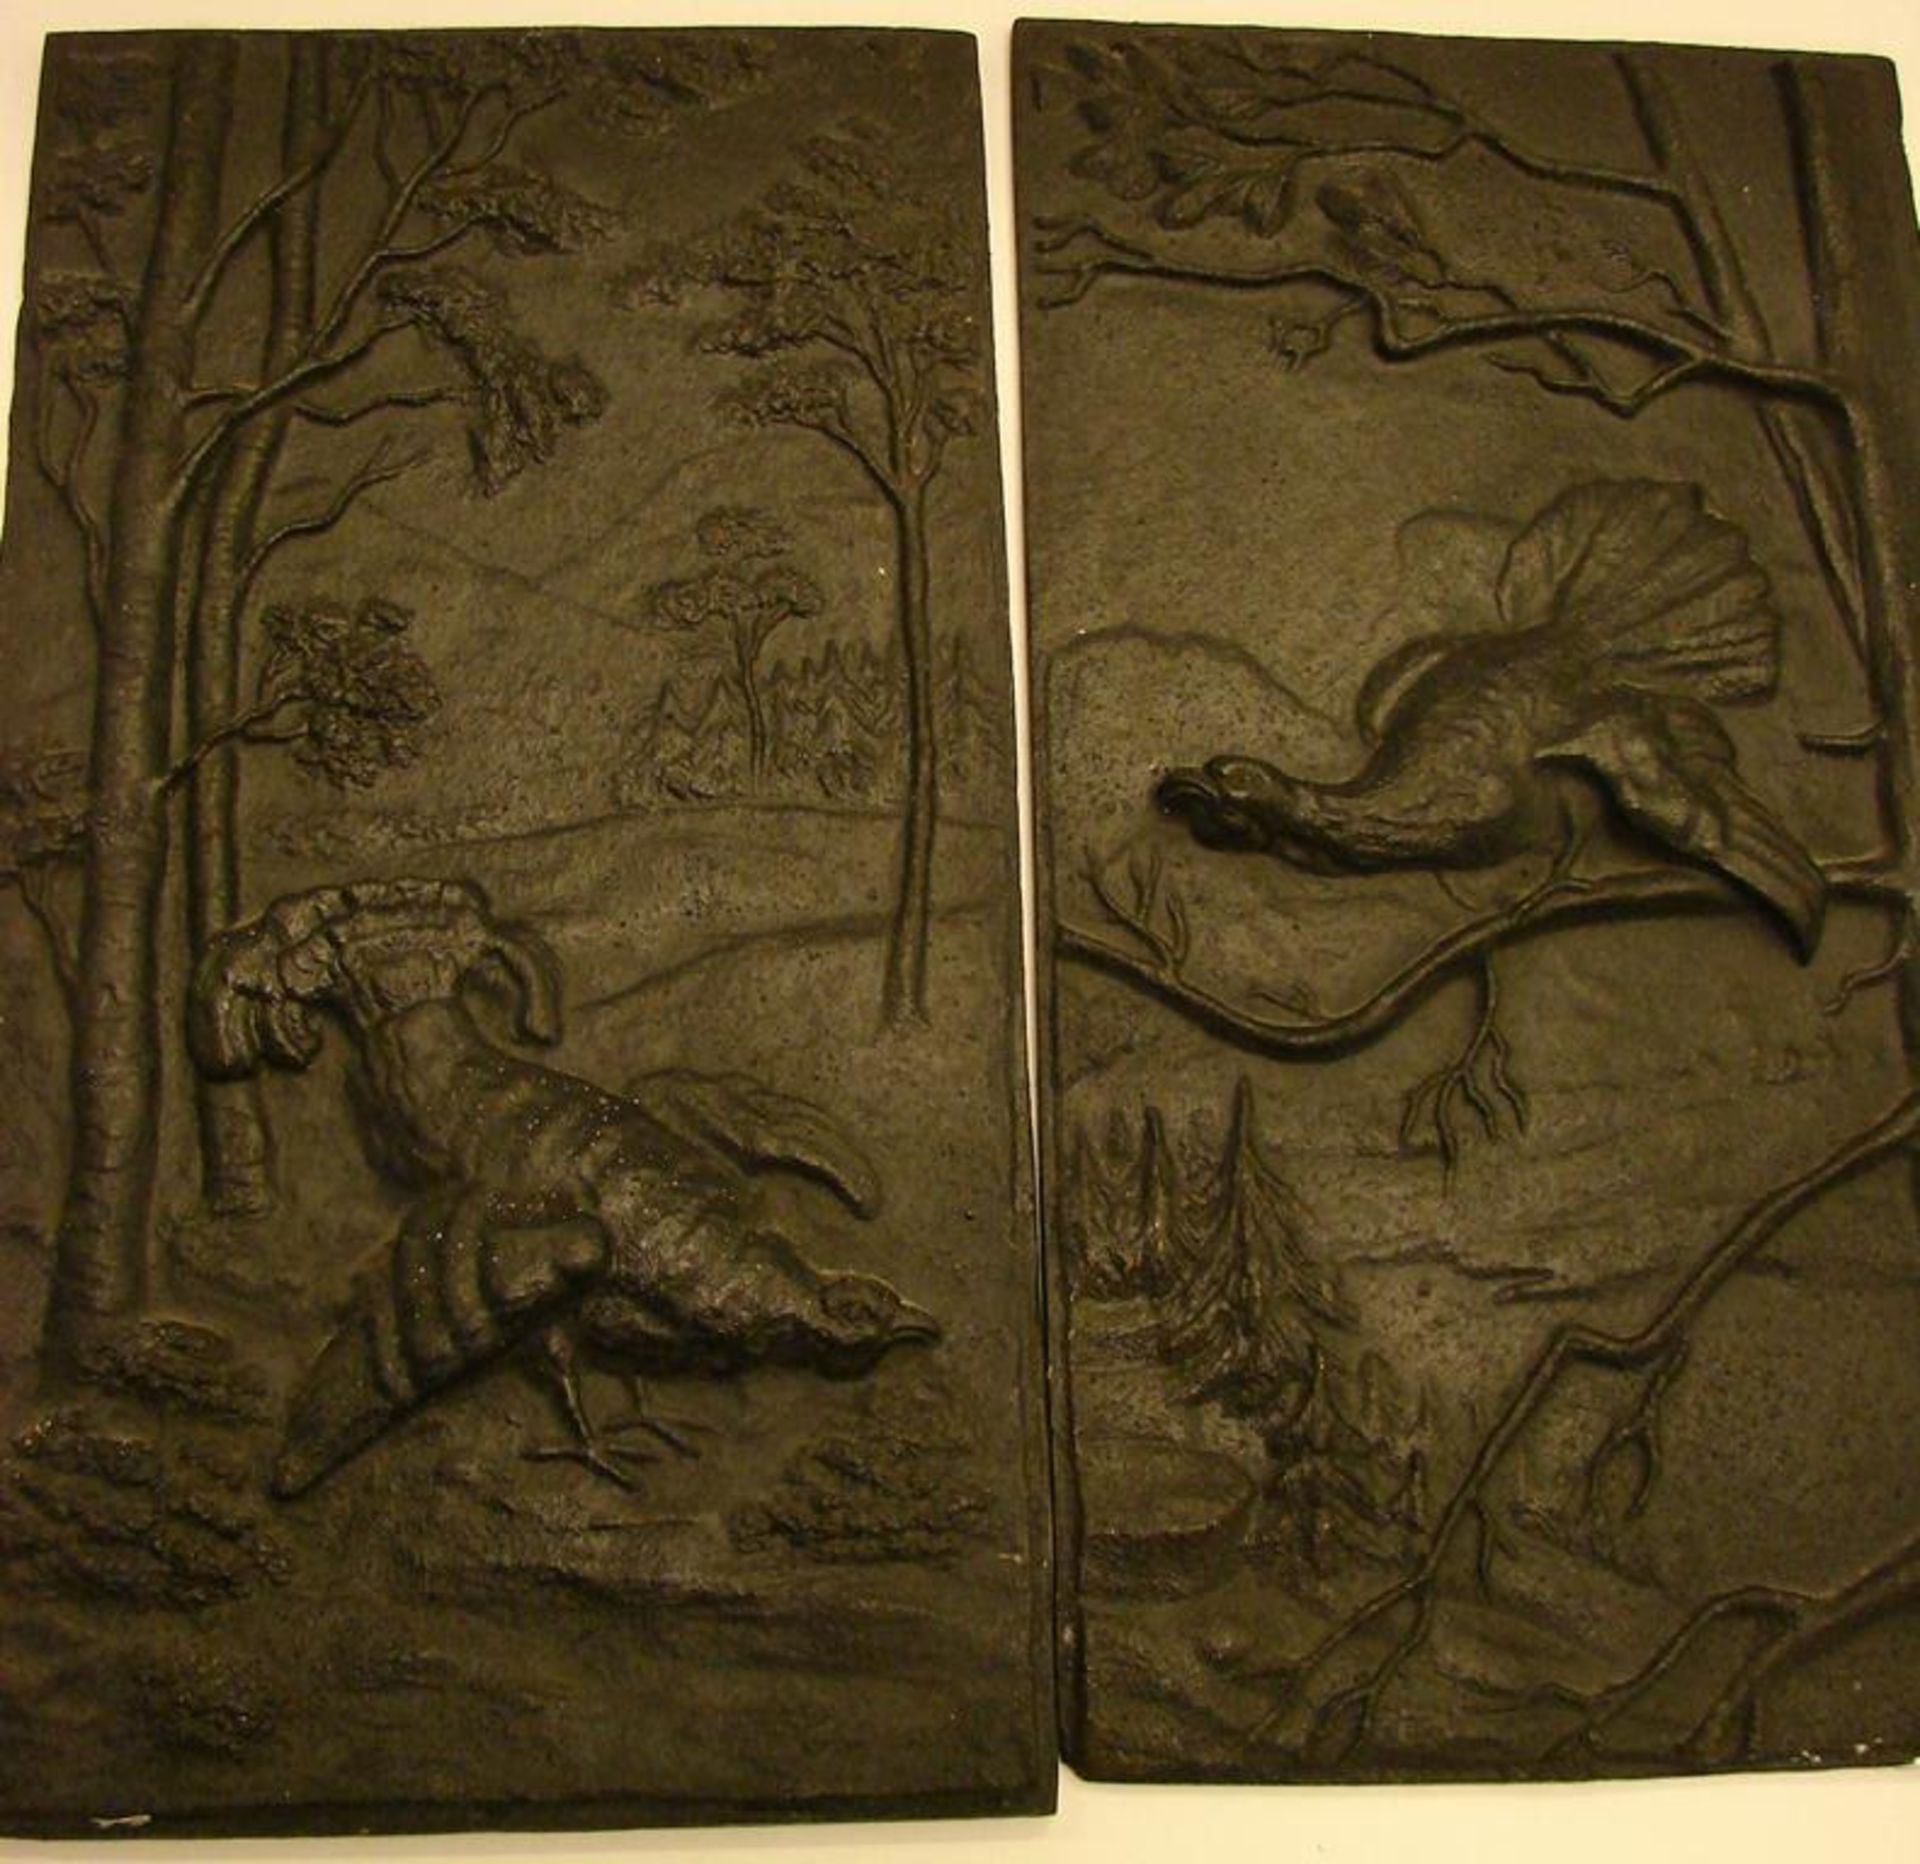 3 Ofenplatten mit Jagdmotiven, Gusseisern, Birkhähne, je ca. 35 x 19 cm, hirschmotiv 20,5 x 40,5 cm - Bild 2 aus 2